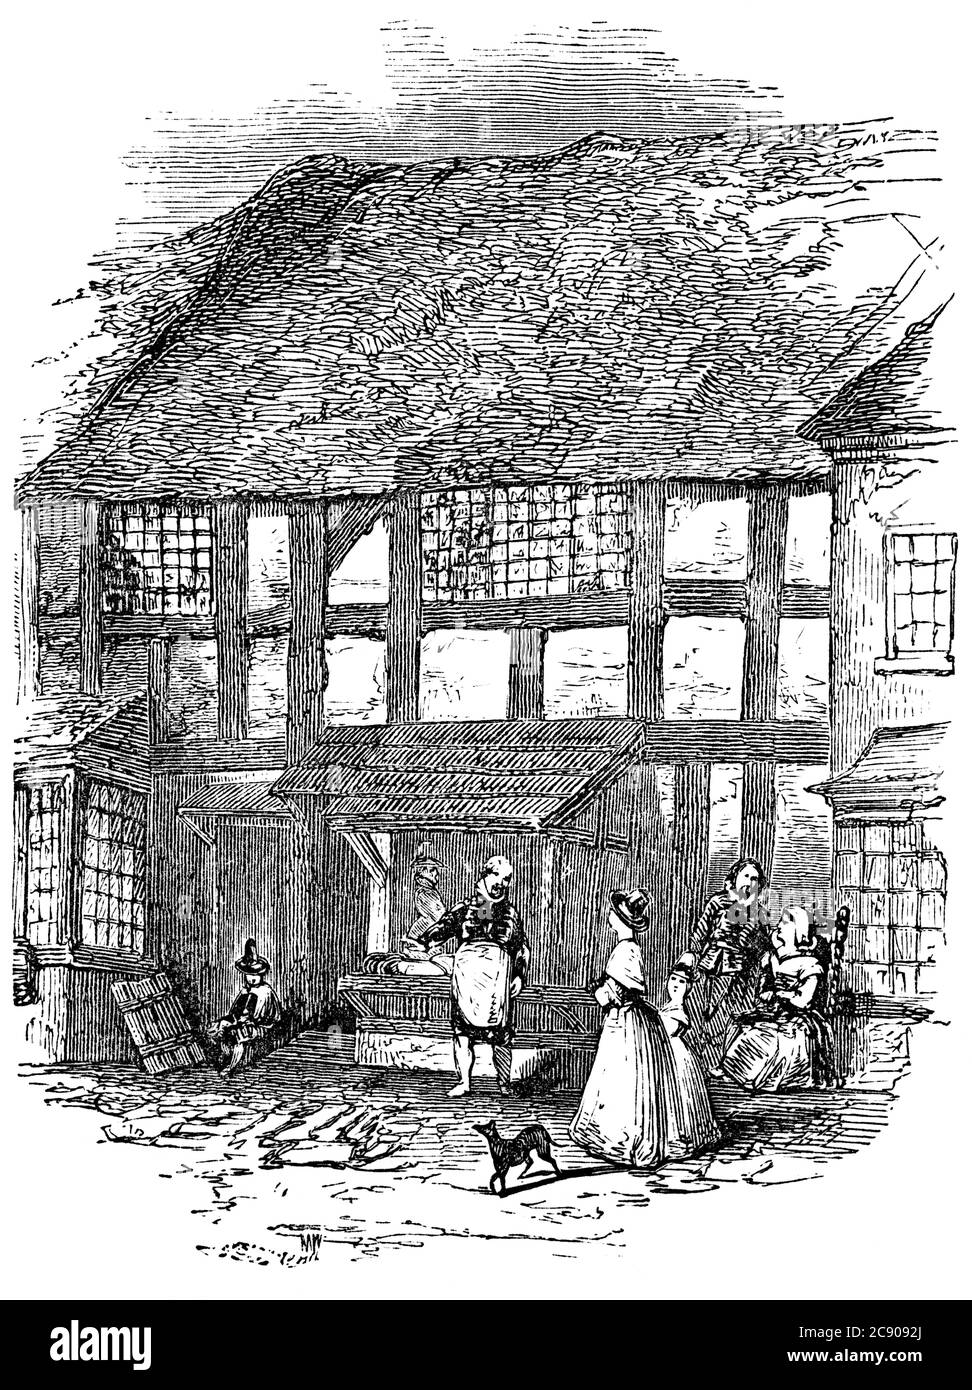 Un ritratto d'immagine d'illustrazione vintage inciso della casa natale del drammaturgo elisabettiano William Shakespeare, da un libro vittoriano datato 188 Foto Stock